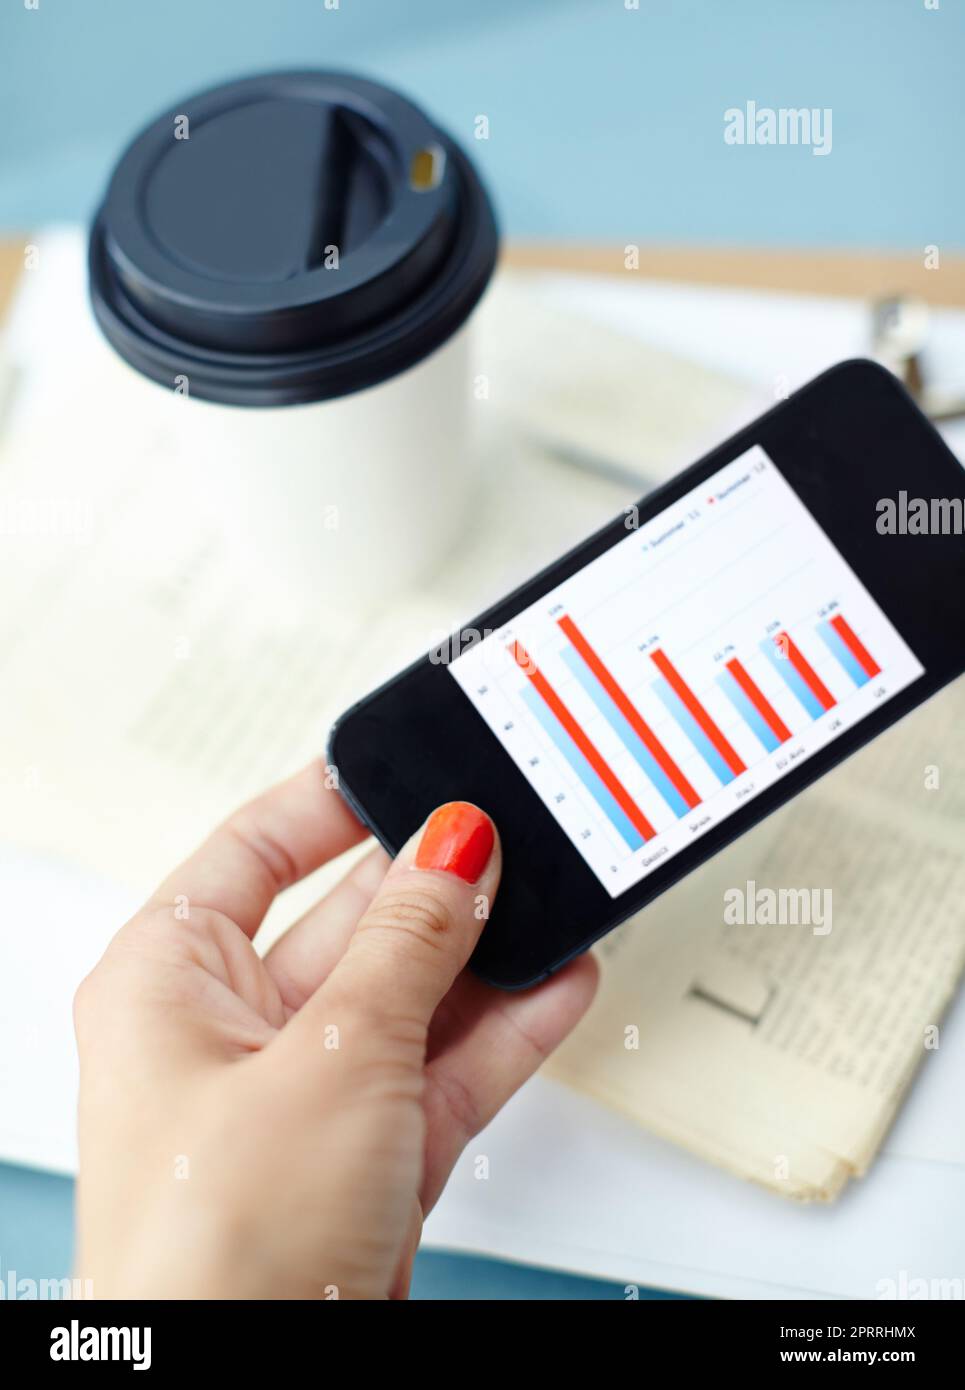 Statistiken für unterwegs. Smartphone in der Hand mit Balkendiagramm auf dem Bildschirm mit Kaffeetasse, Stift, Binderclip, Zeitung und Zwischenablage. Stockfoto